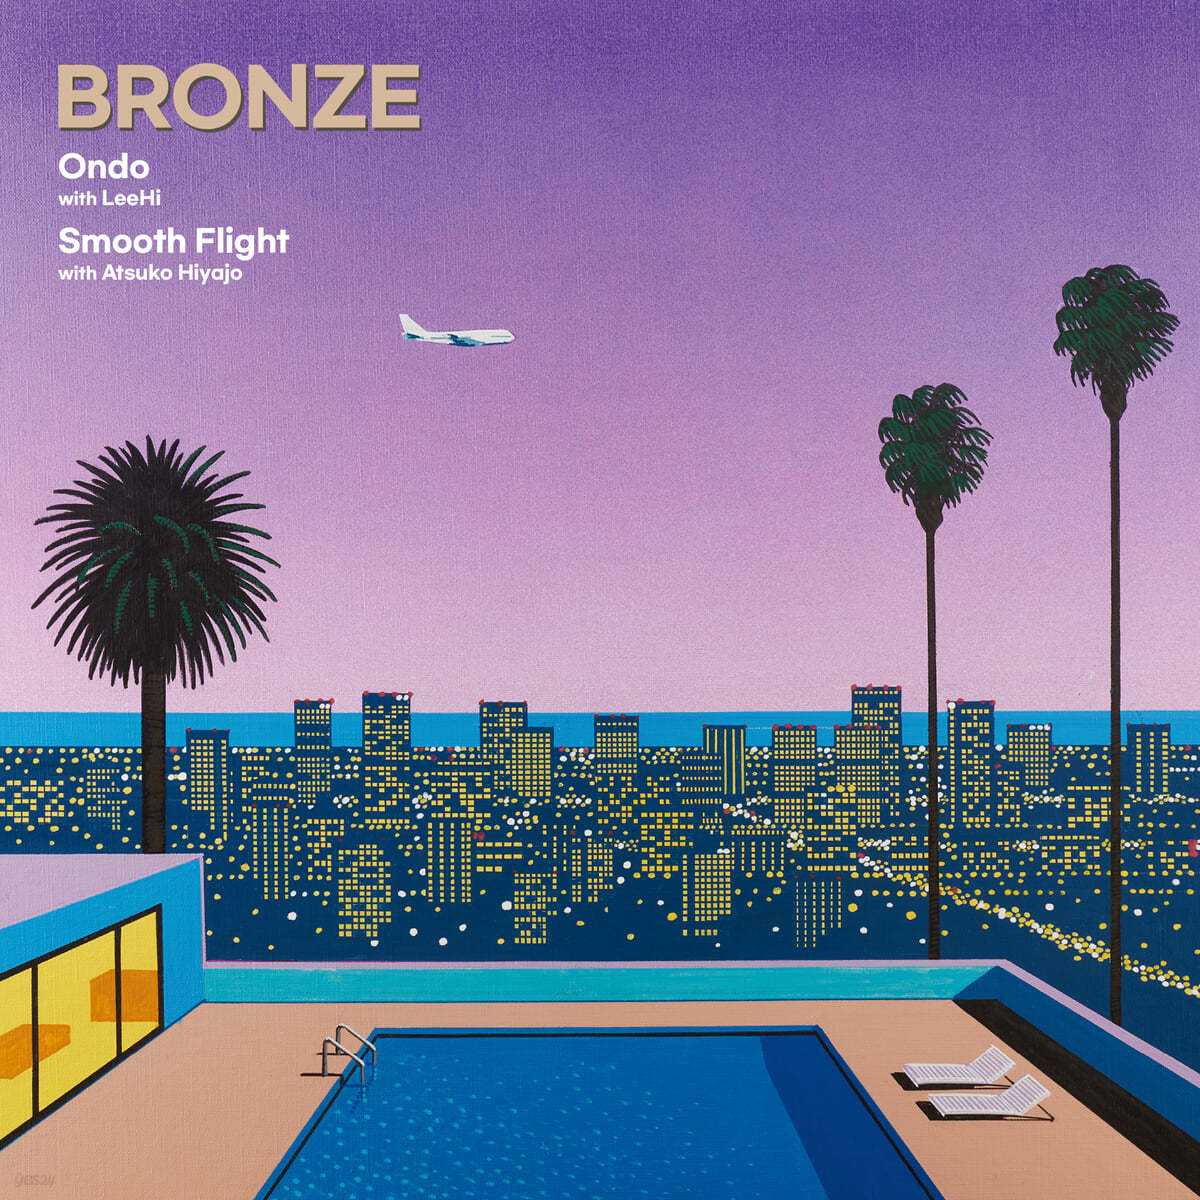 브론즈 (Bronze) - Ondo (with LeeHi 이하이) / Smooth Flight (with Atsuko Hiyajo) [7인치 Vinyl]